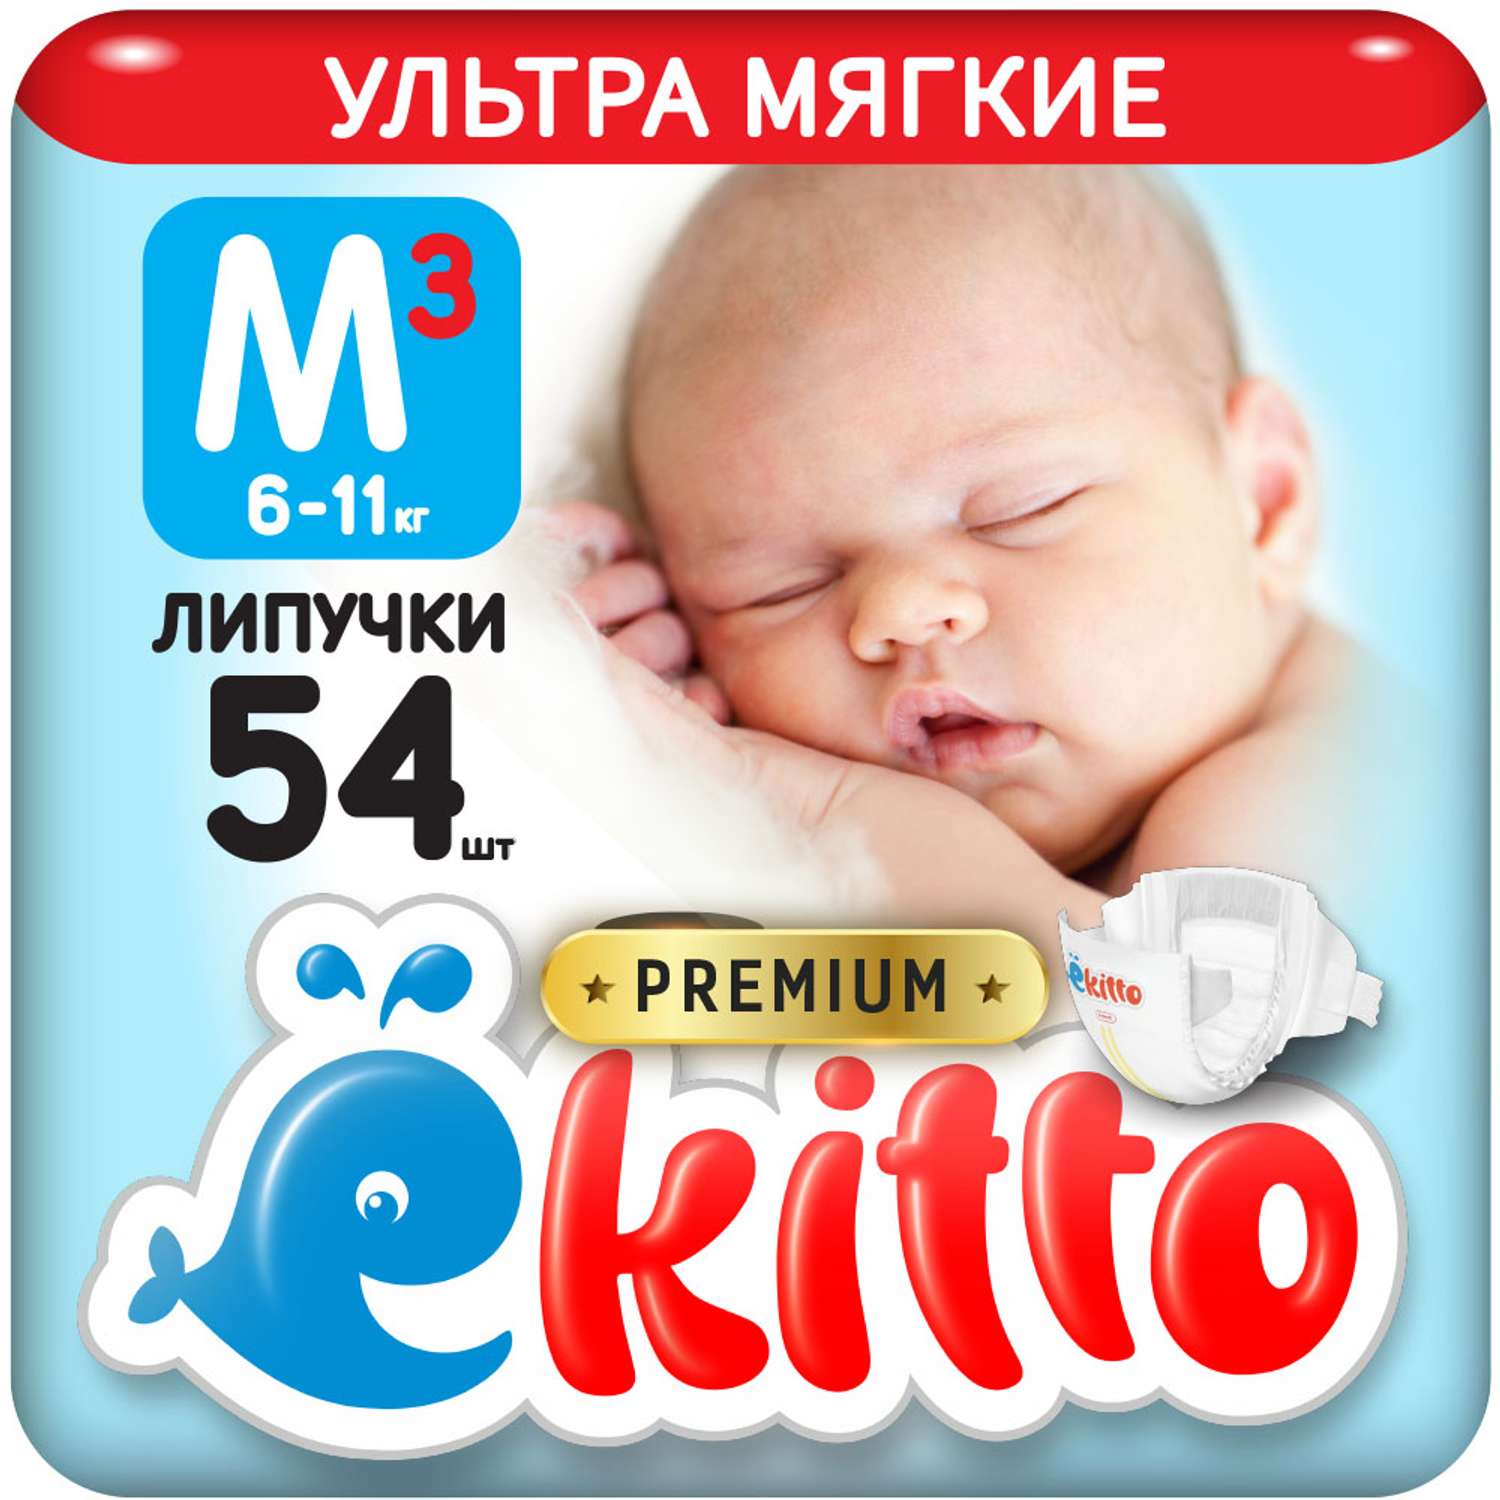 Подгузники Ekitto 3 размер M для новорожденных детей от 6-11 кг 54 шт - фото 1